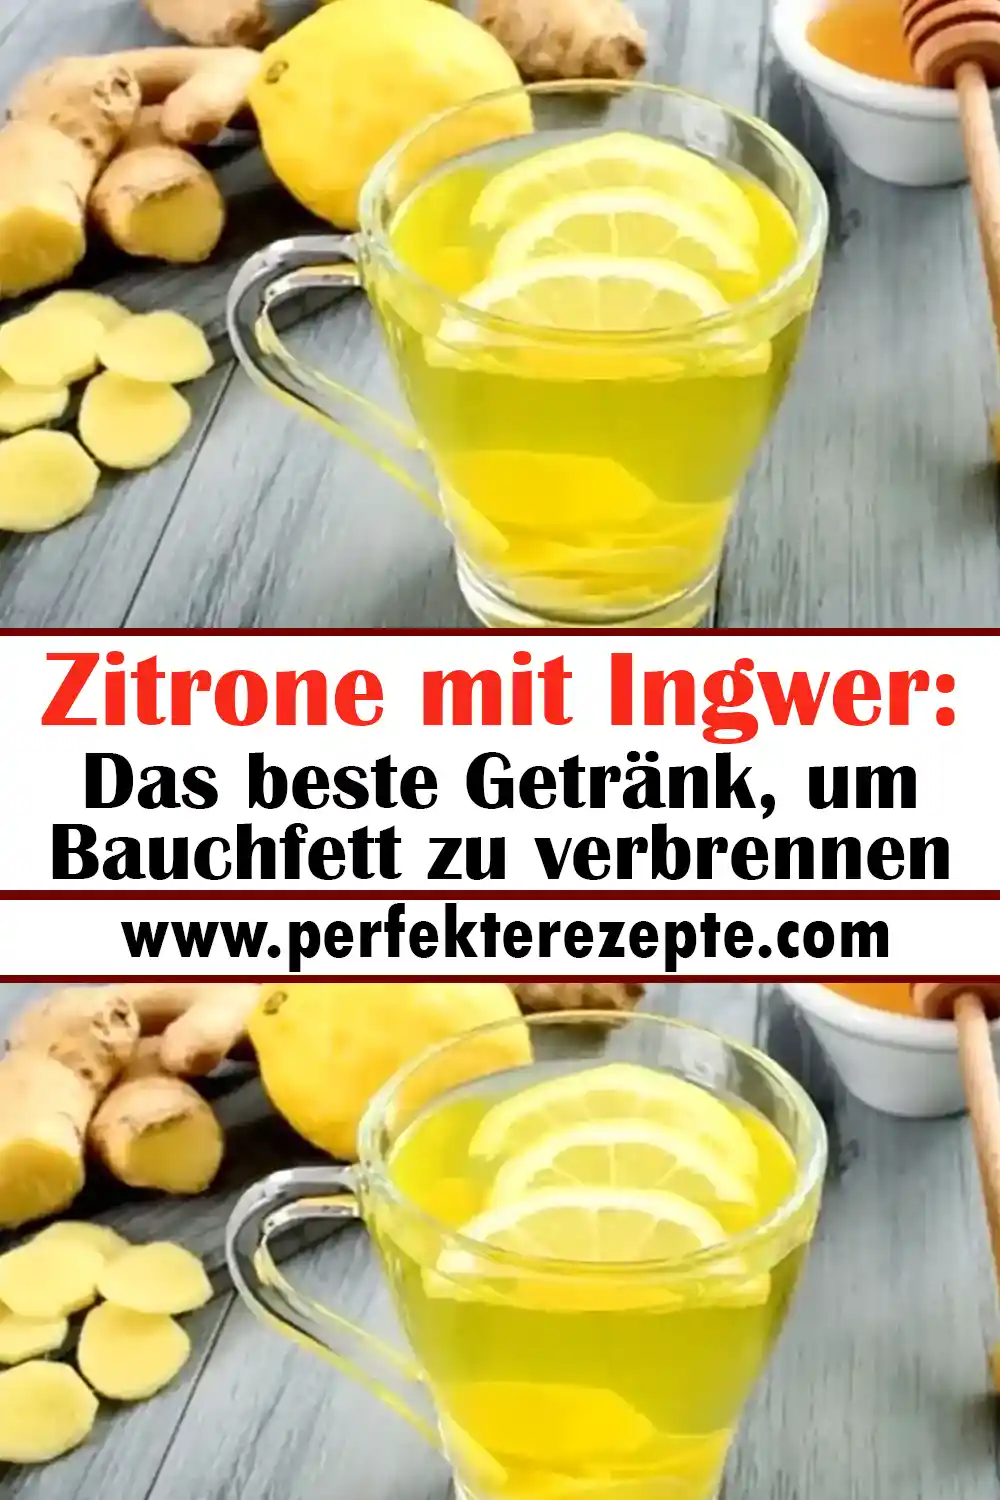 Zitrone mit Ingwer Rezept: Das beste Getränk, um Bauchfett zu verbrennen